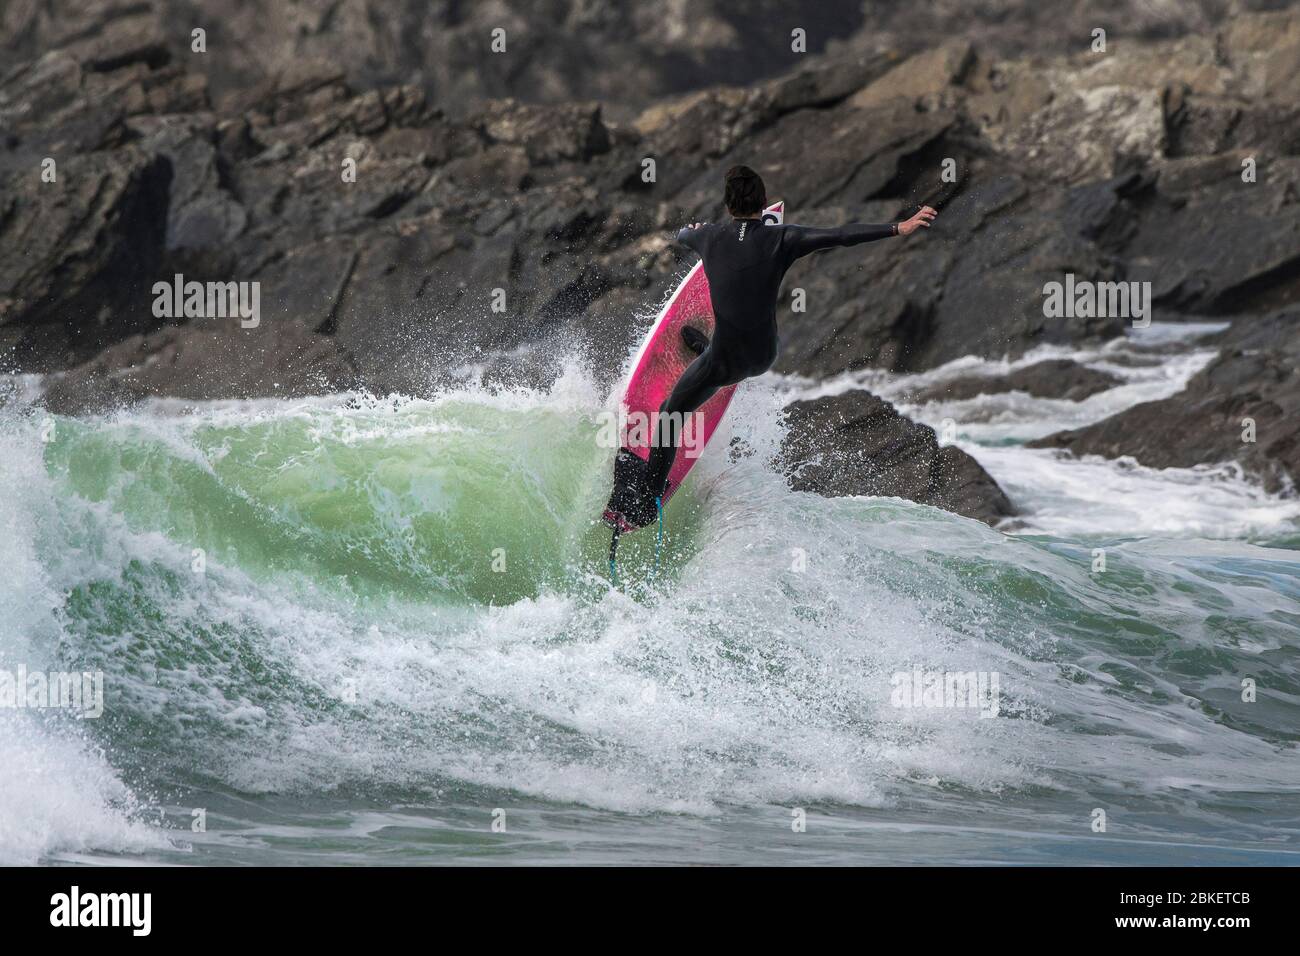 Une action spectaculaire en tant que surfeur se fait dans l'air à partir d'une vague à Fistral à Newquay, en Cornwall. Banque D'Images